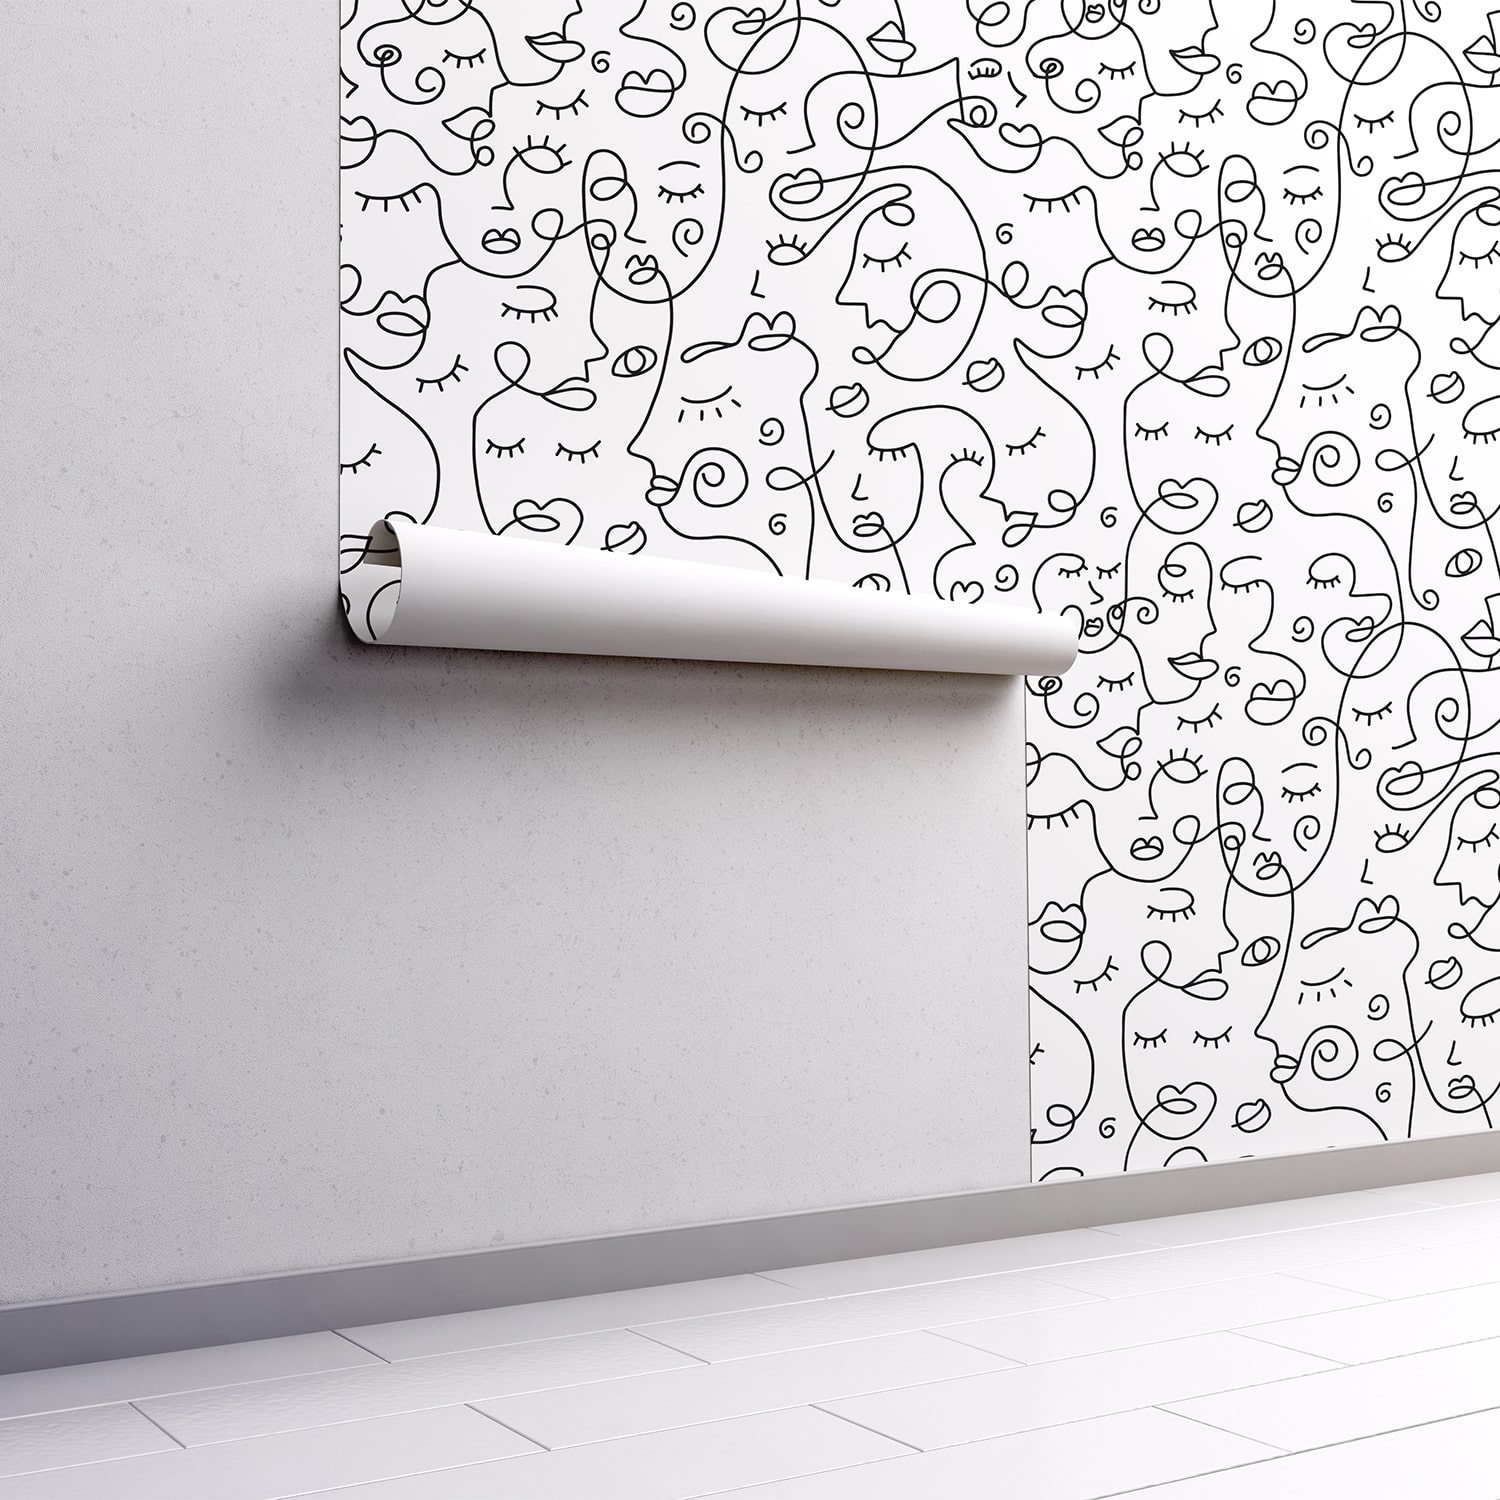 PP102-mur.rouleau-papier-peint-adhesif-decoratif-revetement-vinyle-motifs-visage-au-fil-de-fer-noir-et-blanc-renovation-meuble-mur-min